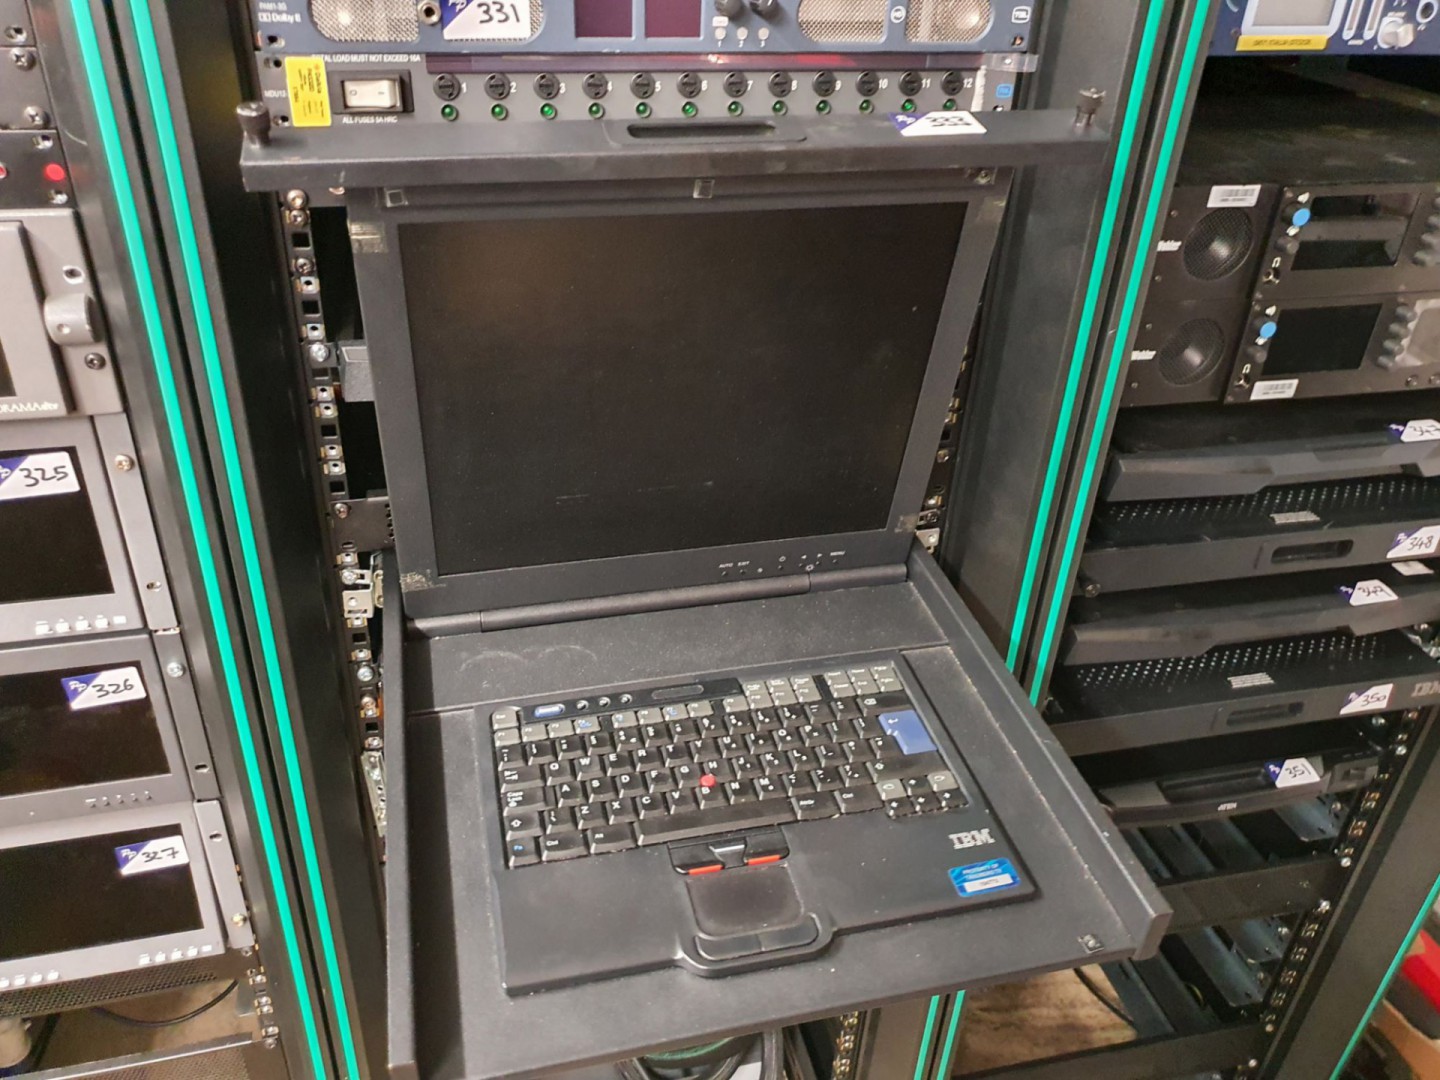 IBM 1723-1nk rack mount monitor, keyboard